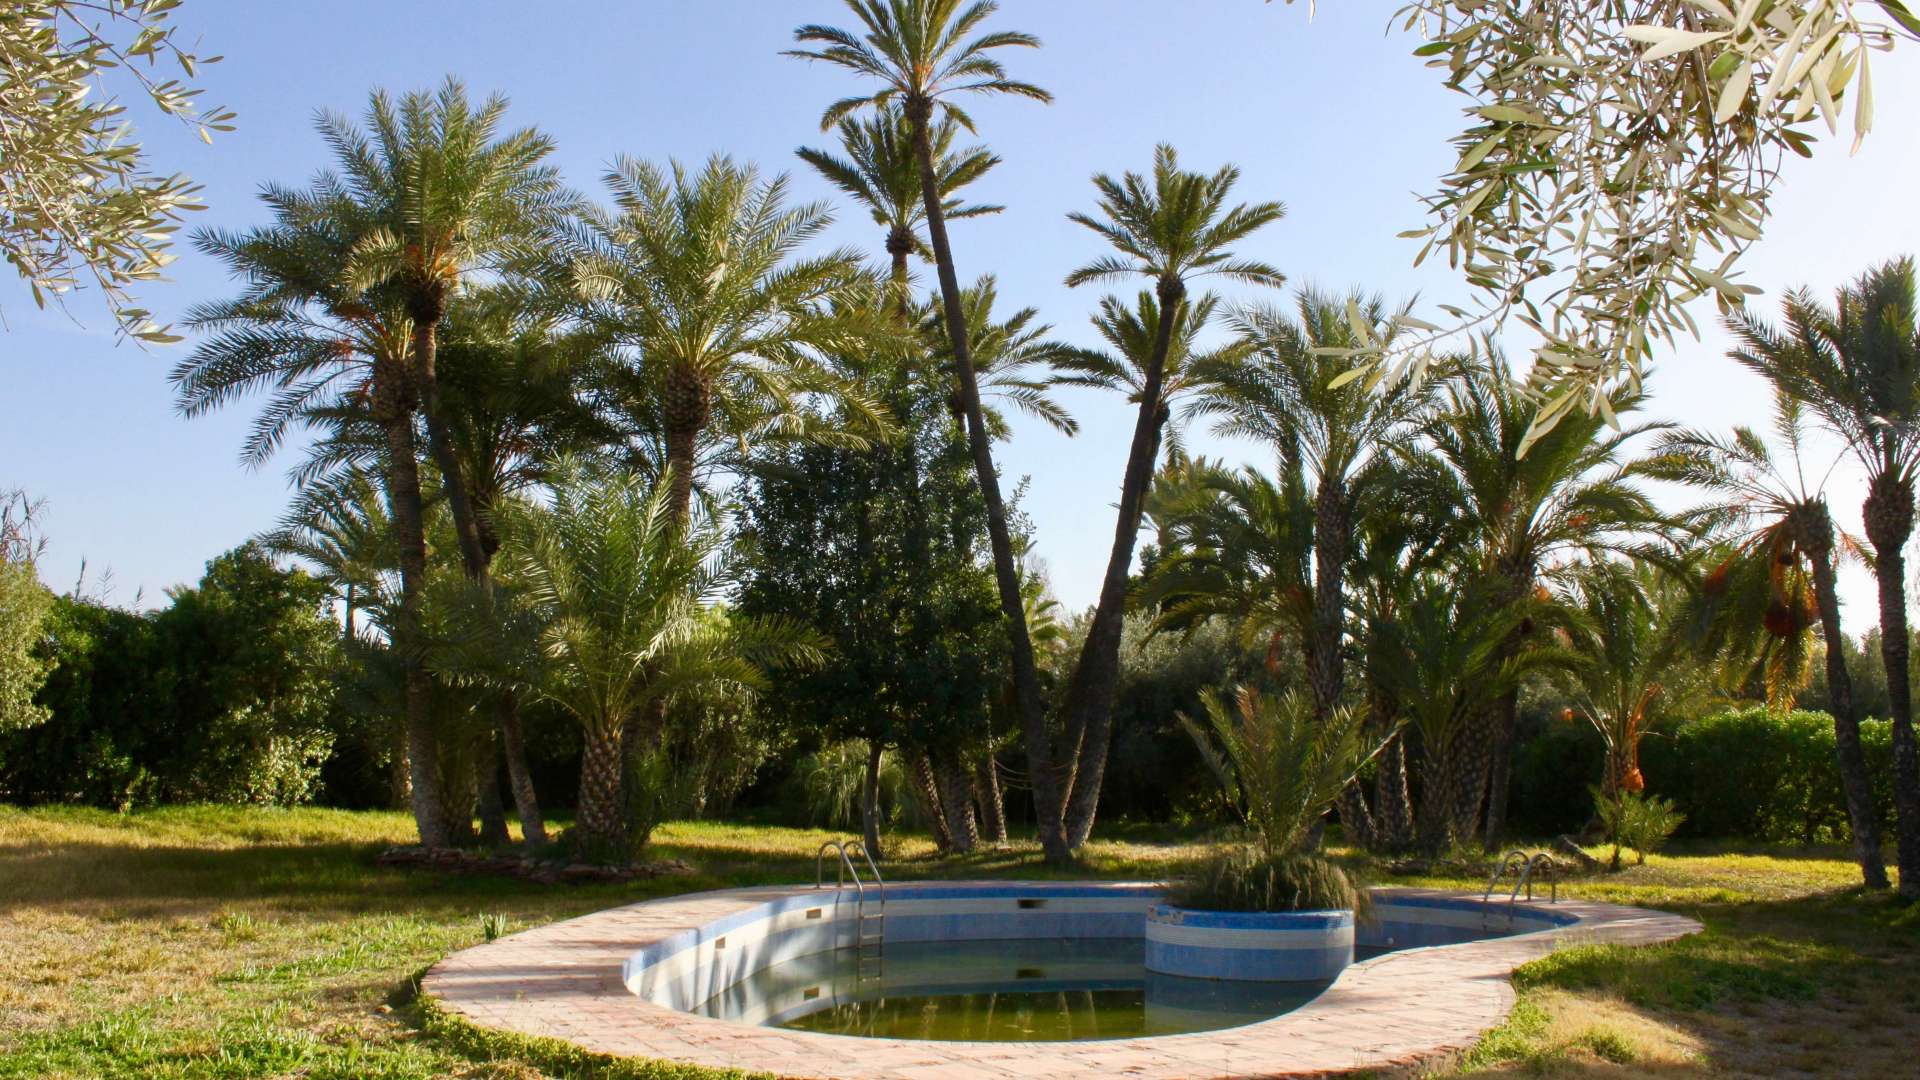 Vente,Villa,Villa 4ch aux jardins de la Palmeraie à Marrakech,Marrakech,Palmeraie